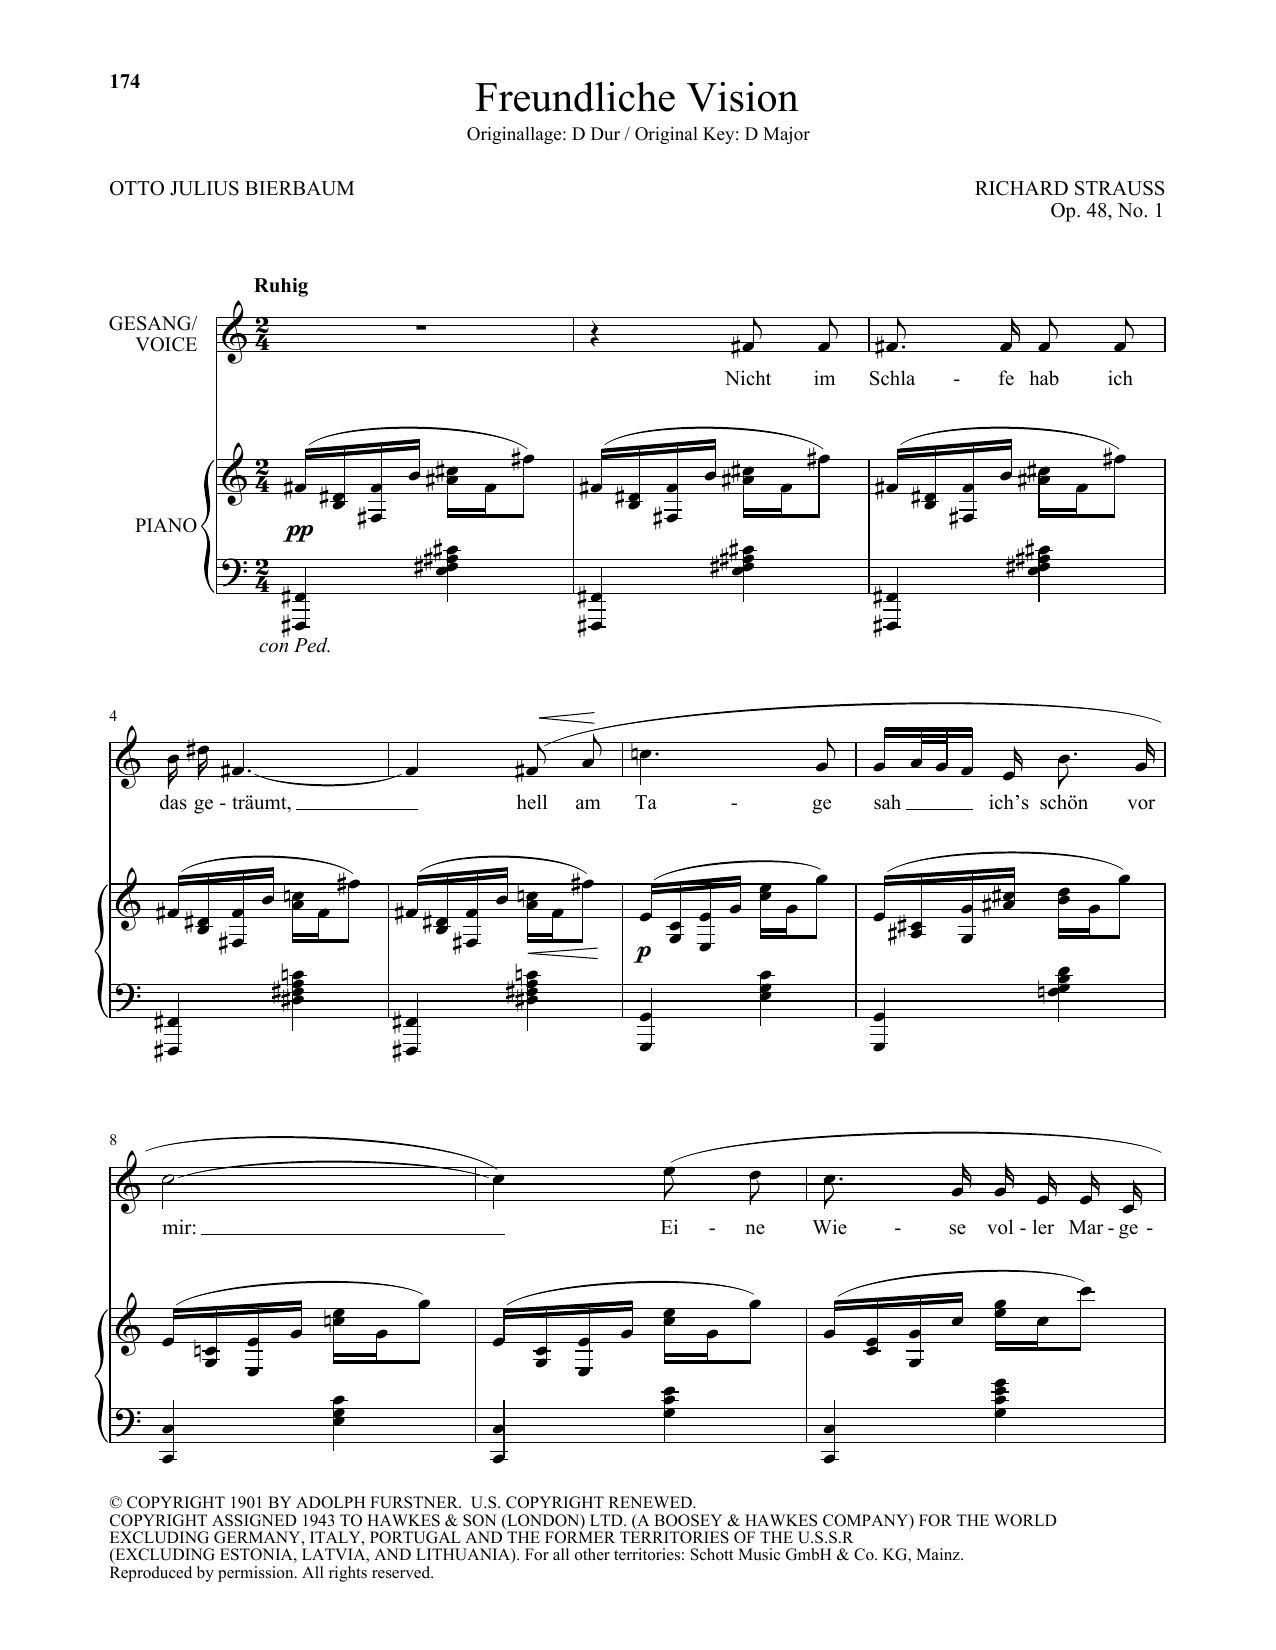 Download Richard Strauss Freundliche Vision (Low Voice) Sheet Music